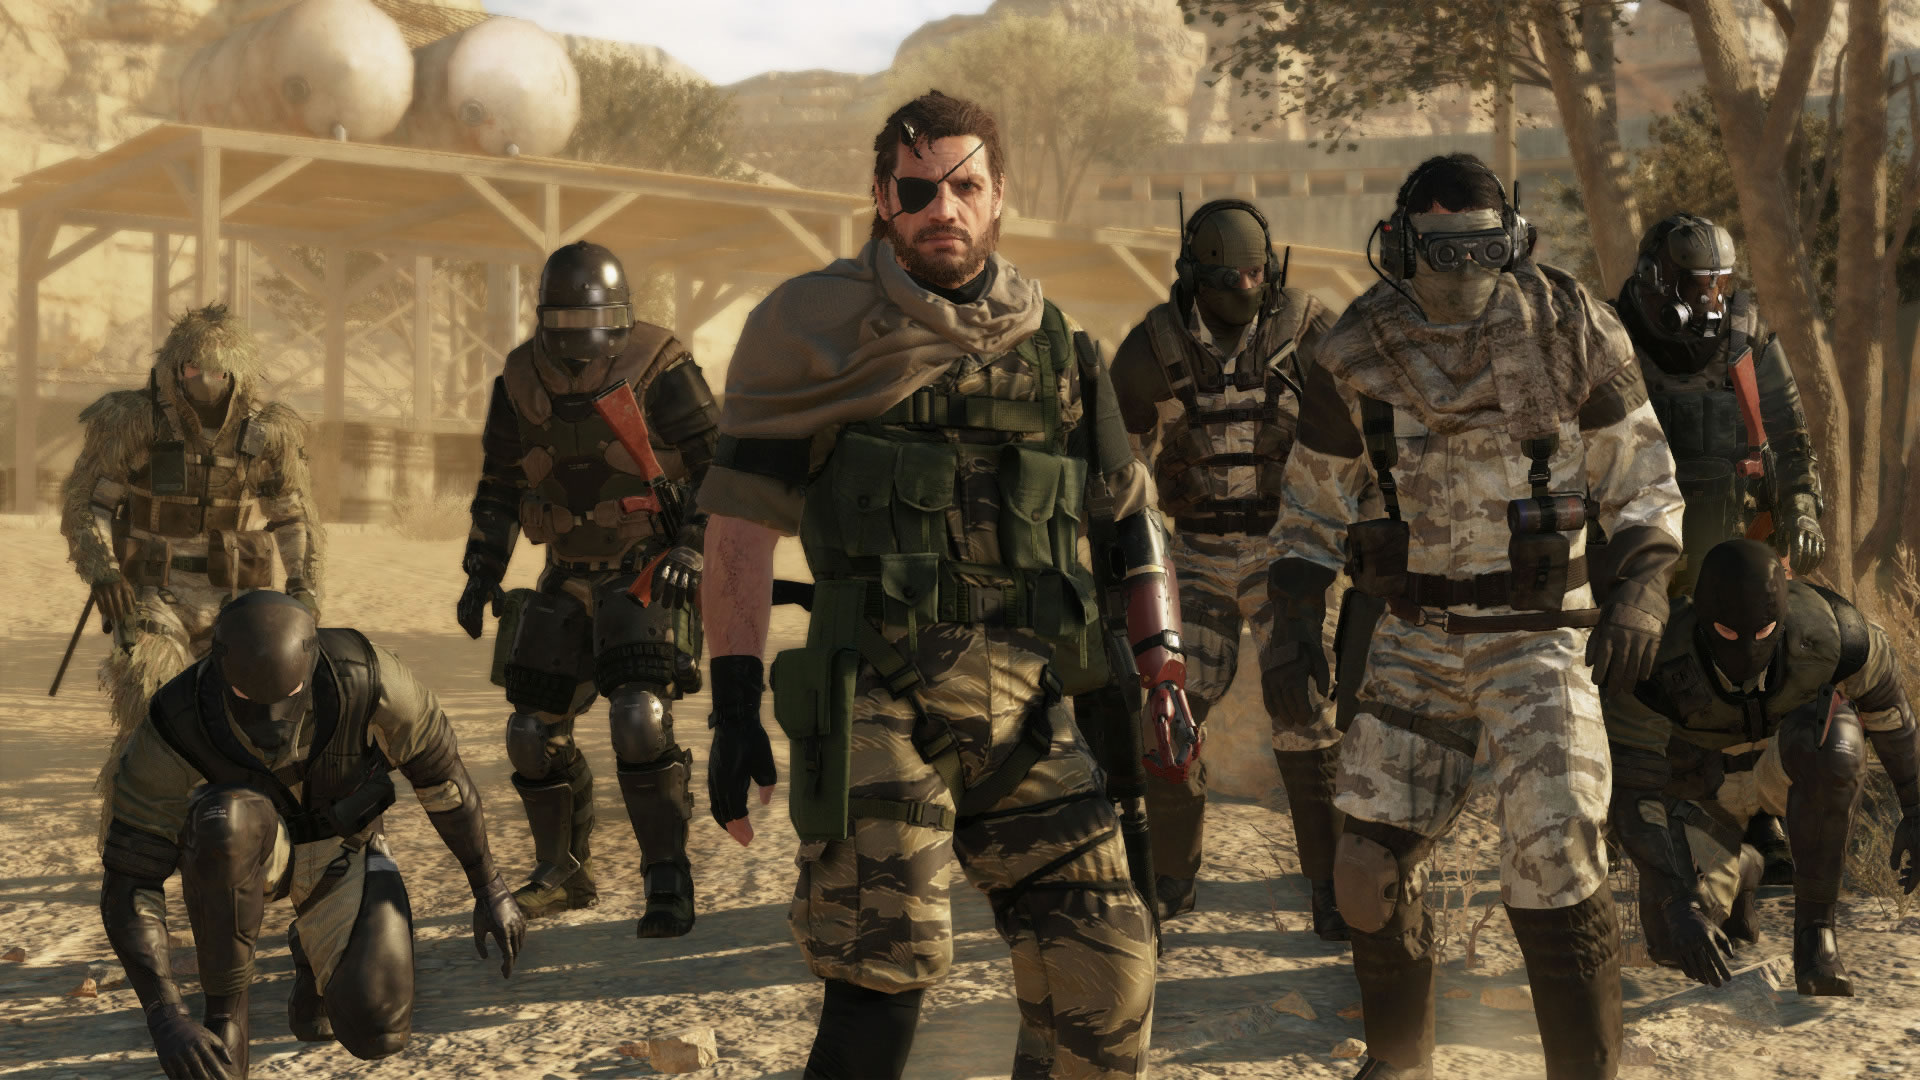 Nouvelles images pour Metal Gear Online - Metal Gear Solid V